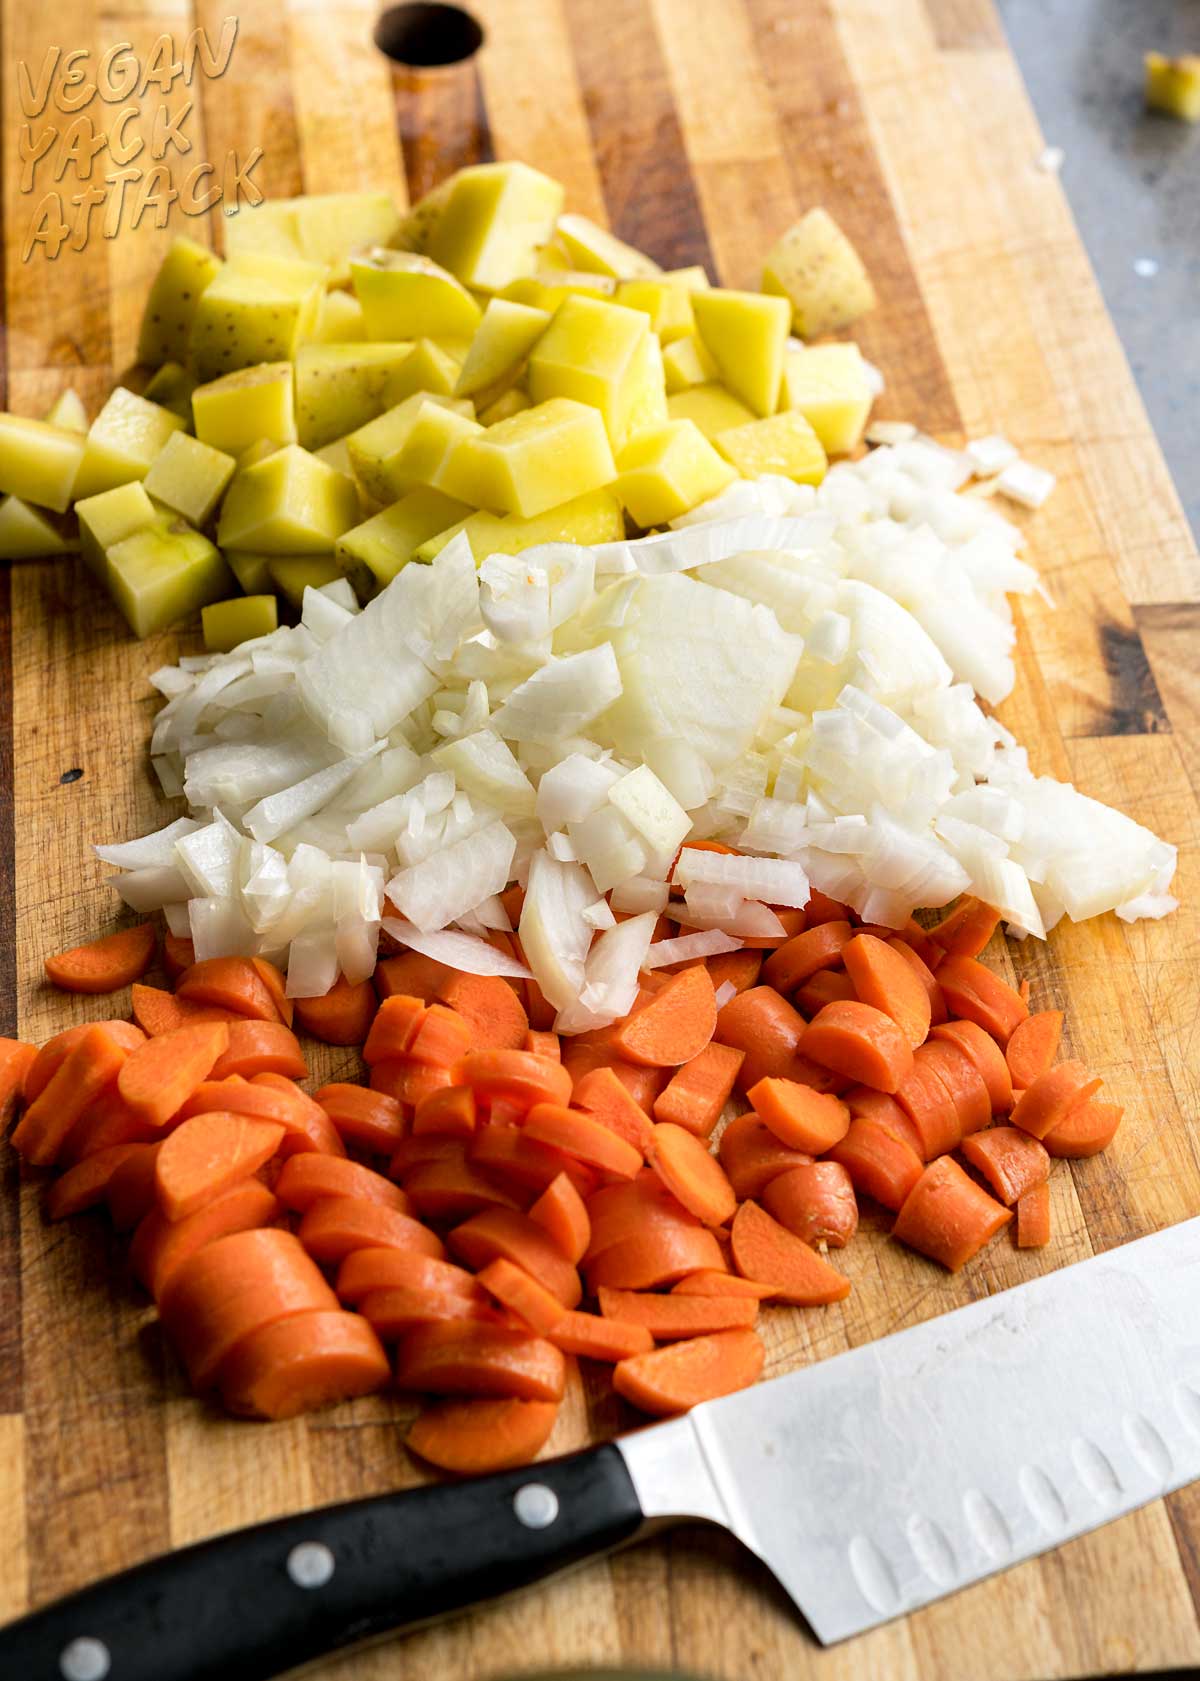 carote, cipolla e patate tritate su un tagliere